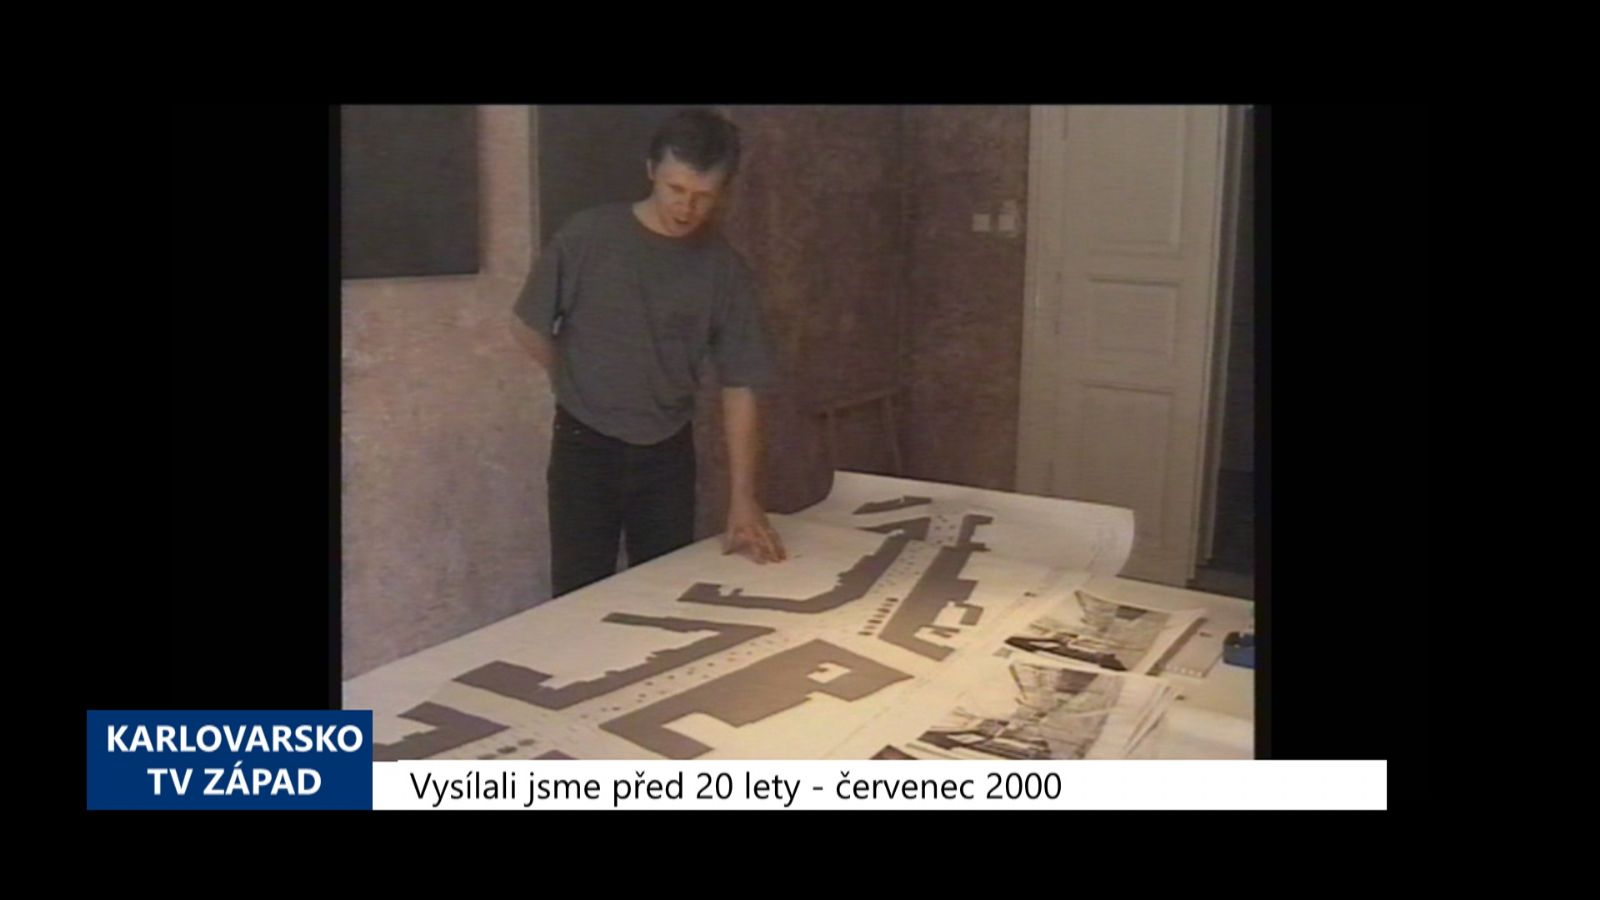 2000 – Cheb: Rekonstrukce pěší zóny se odkládá na příští rok (TV Západ)